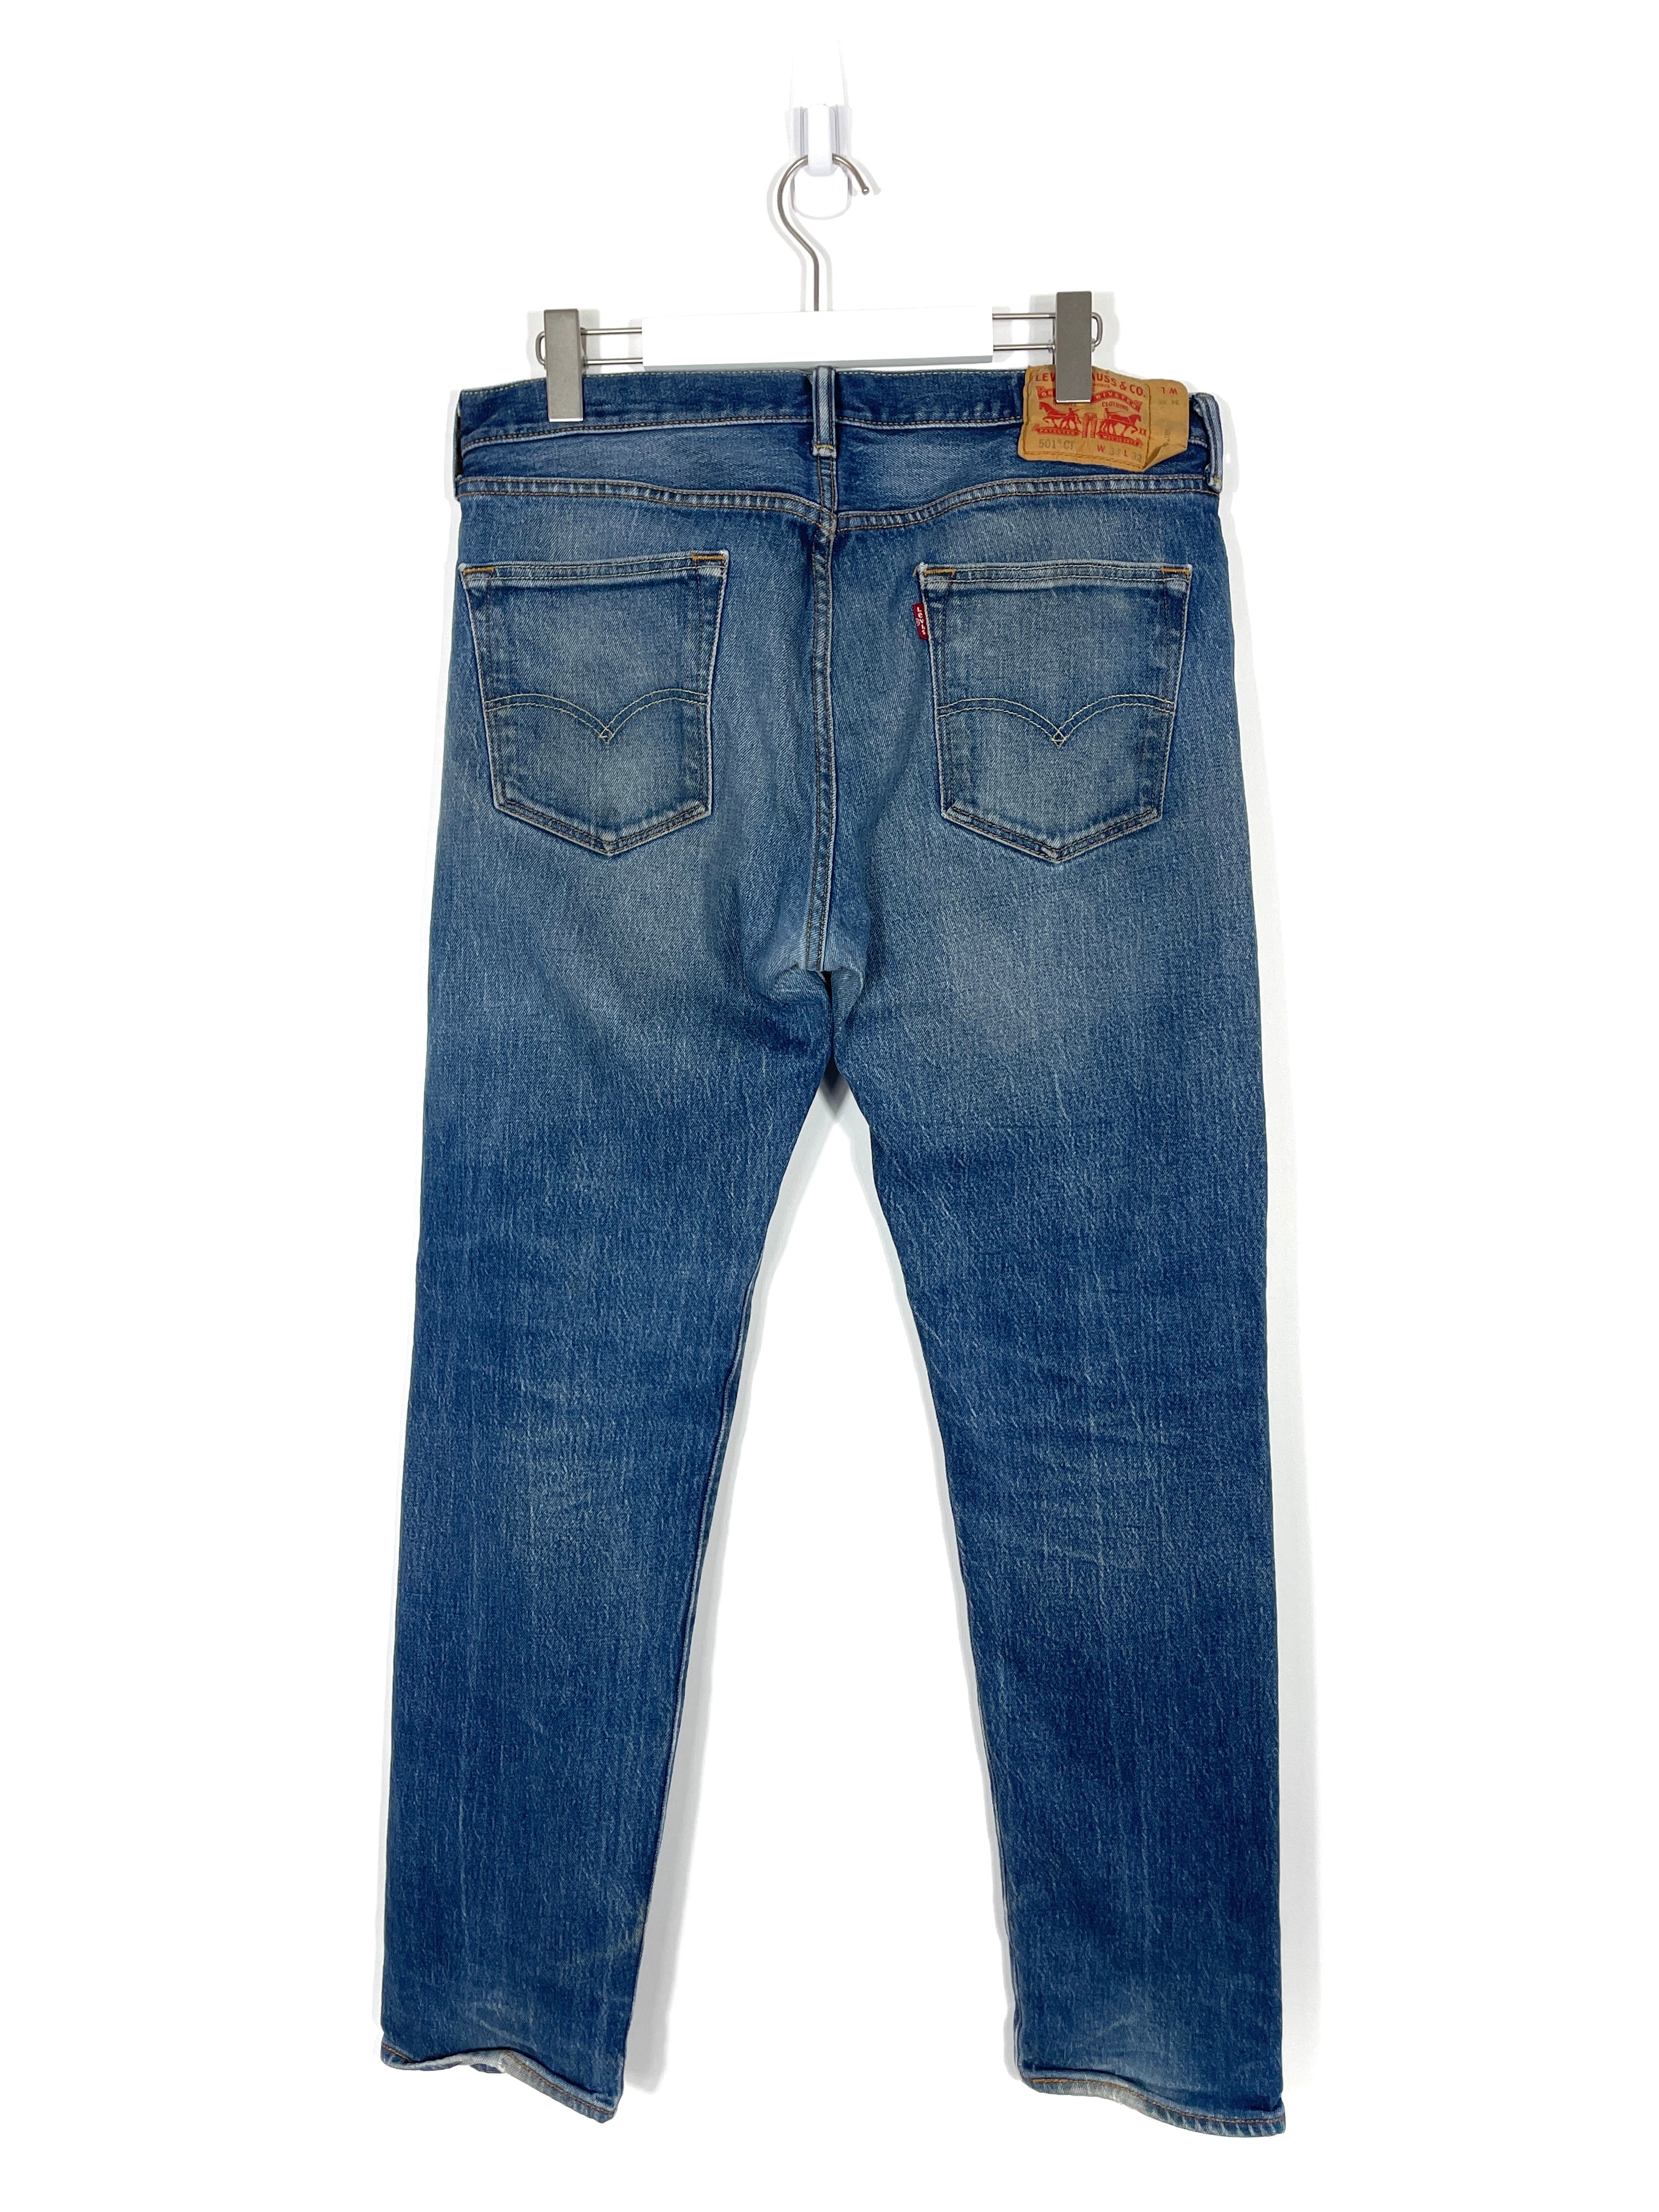 Vintage Levis 501 Jeans - Men's 34x32